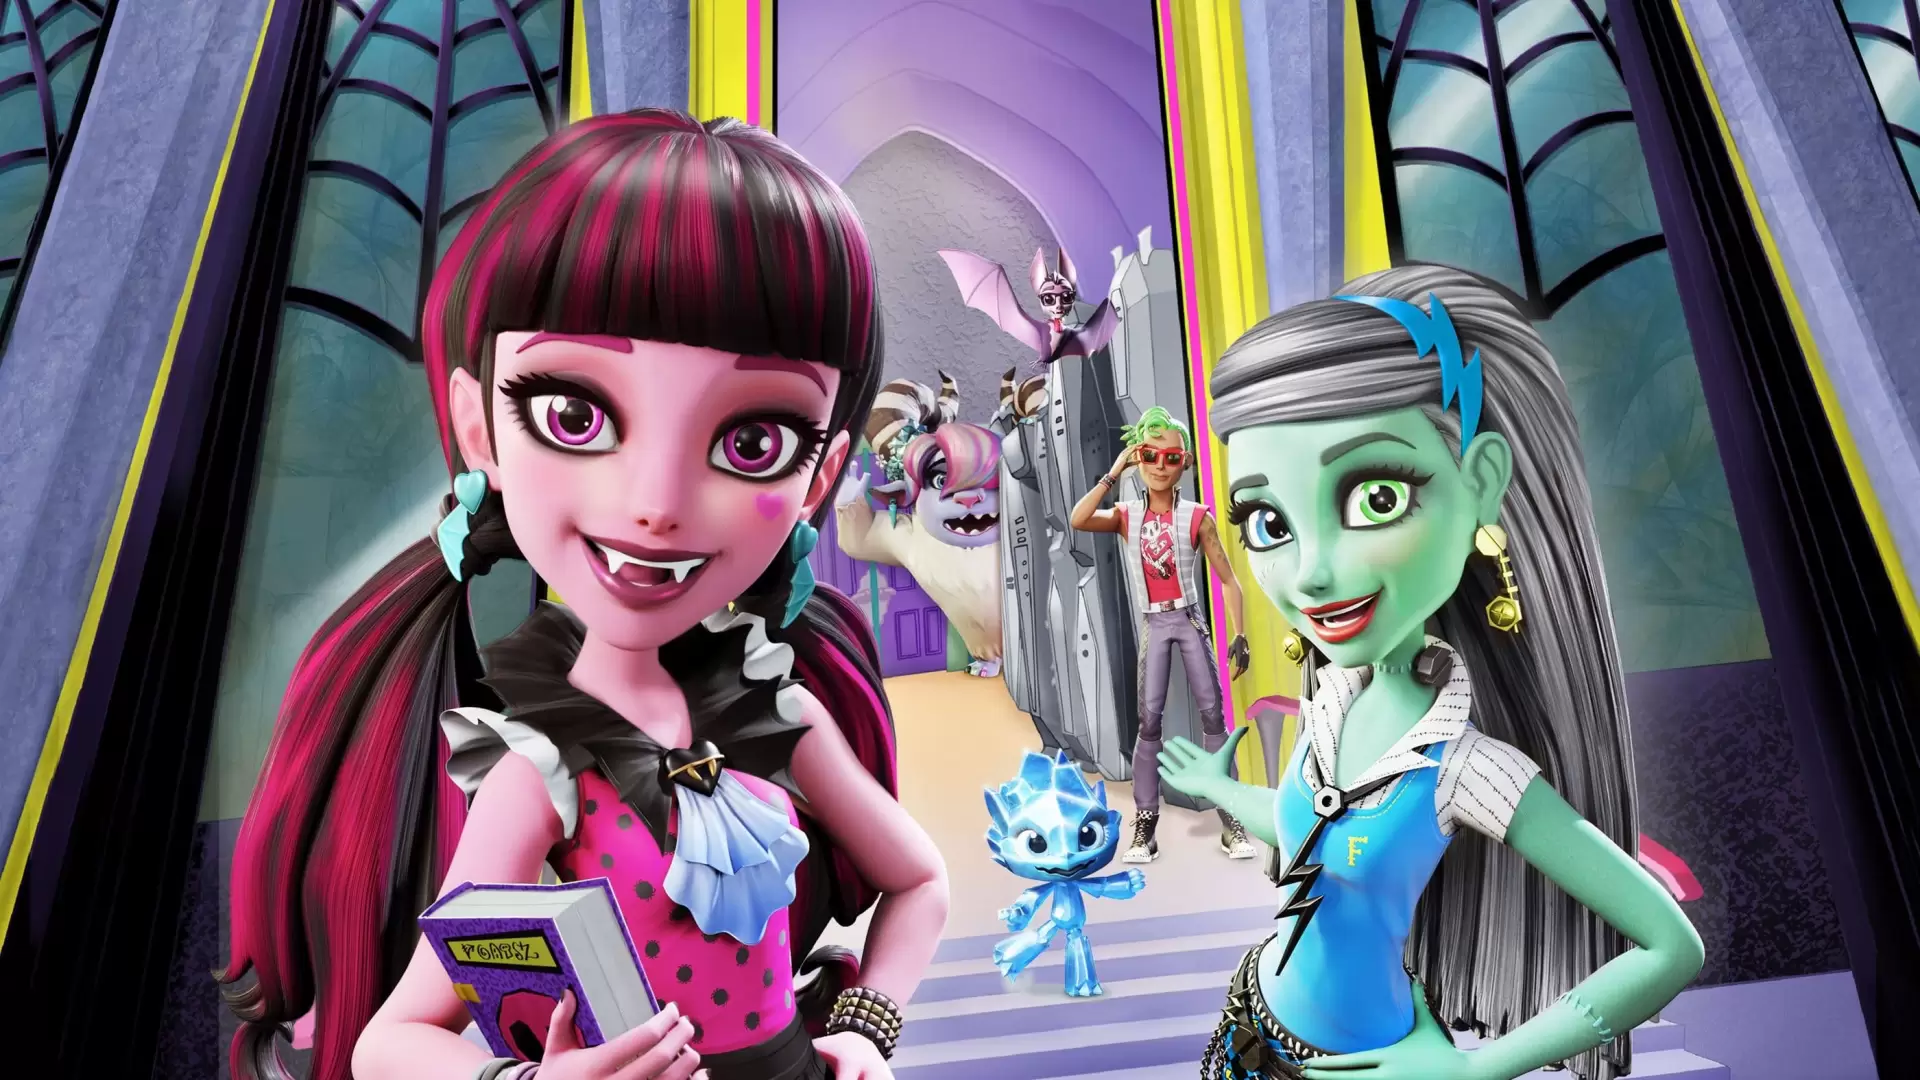 دانلود انیمیشن Monster High: Welcome to Monster High 2016 با زیرنویس فارسی